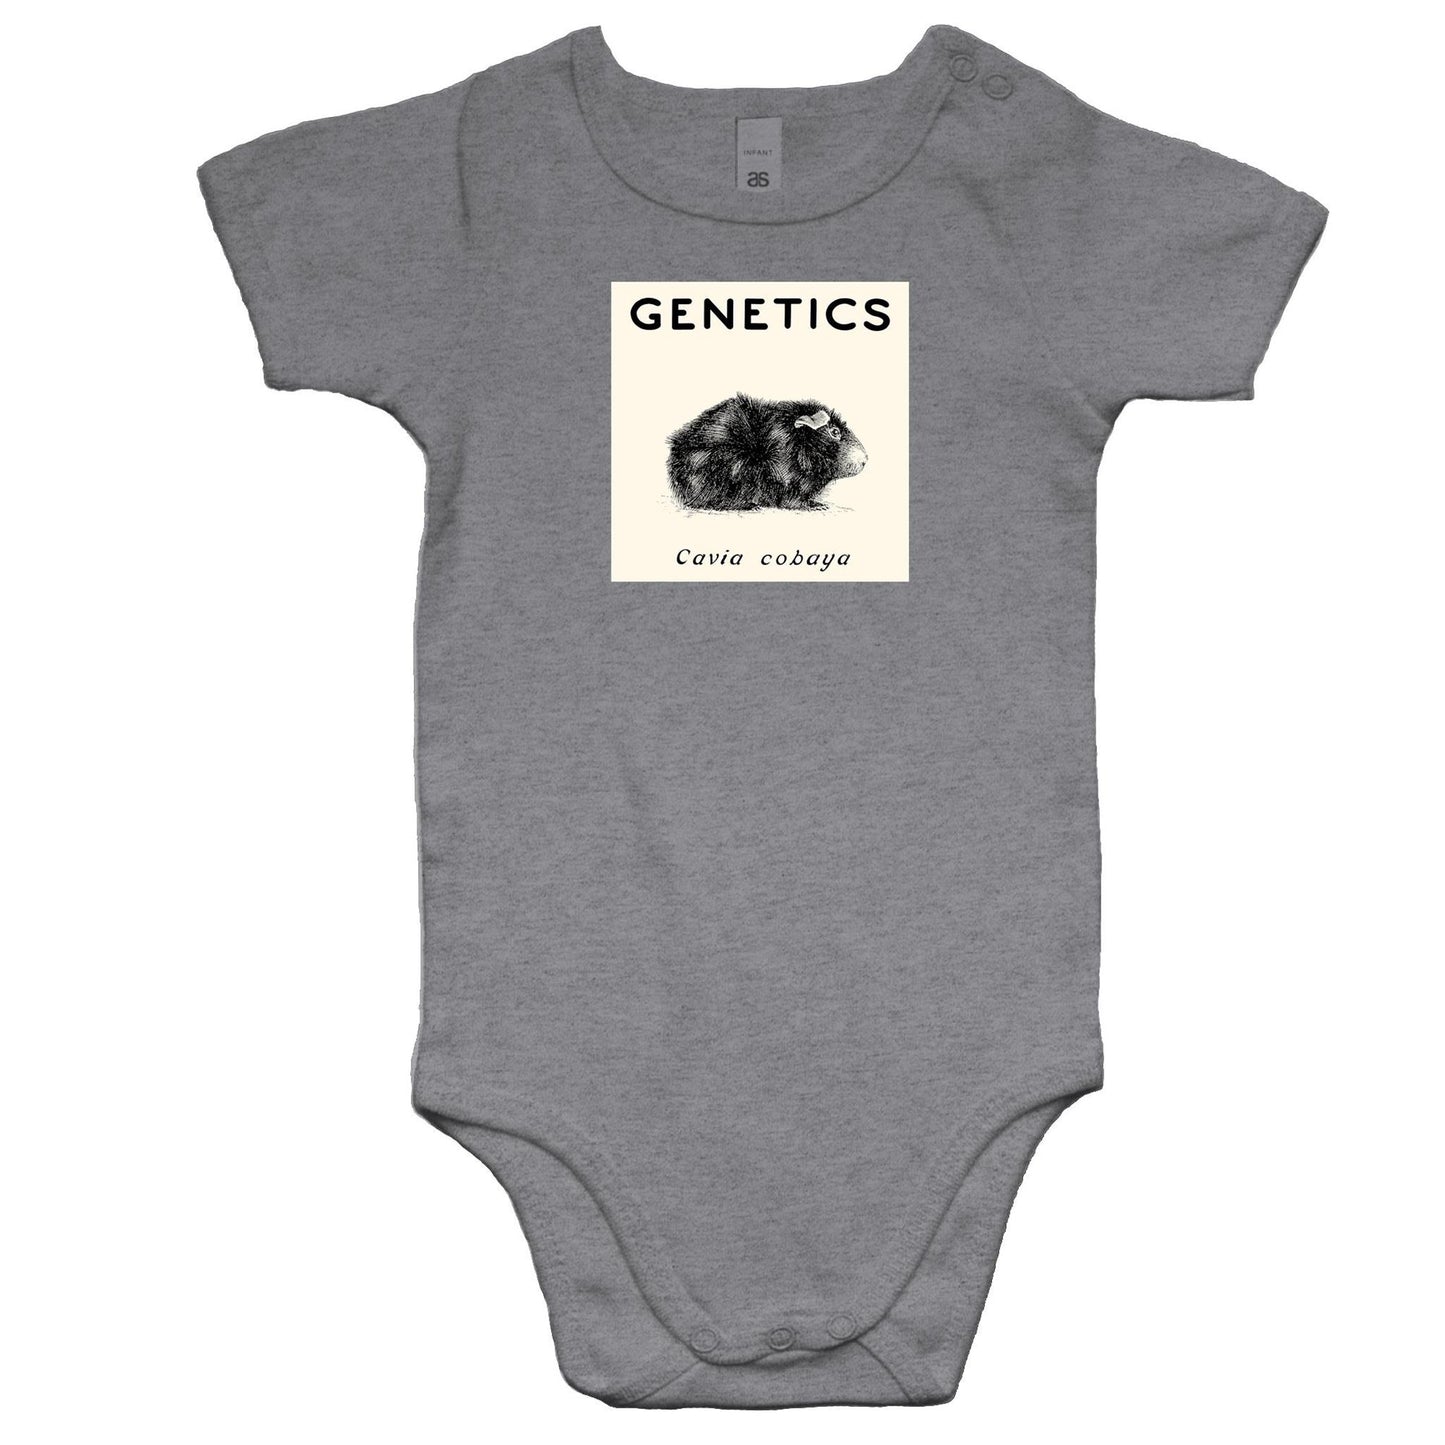 Genetics Rompers for Babies